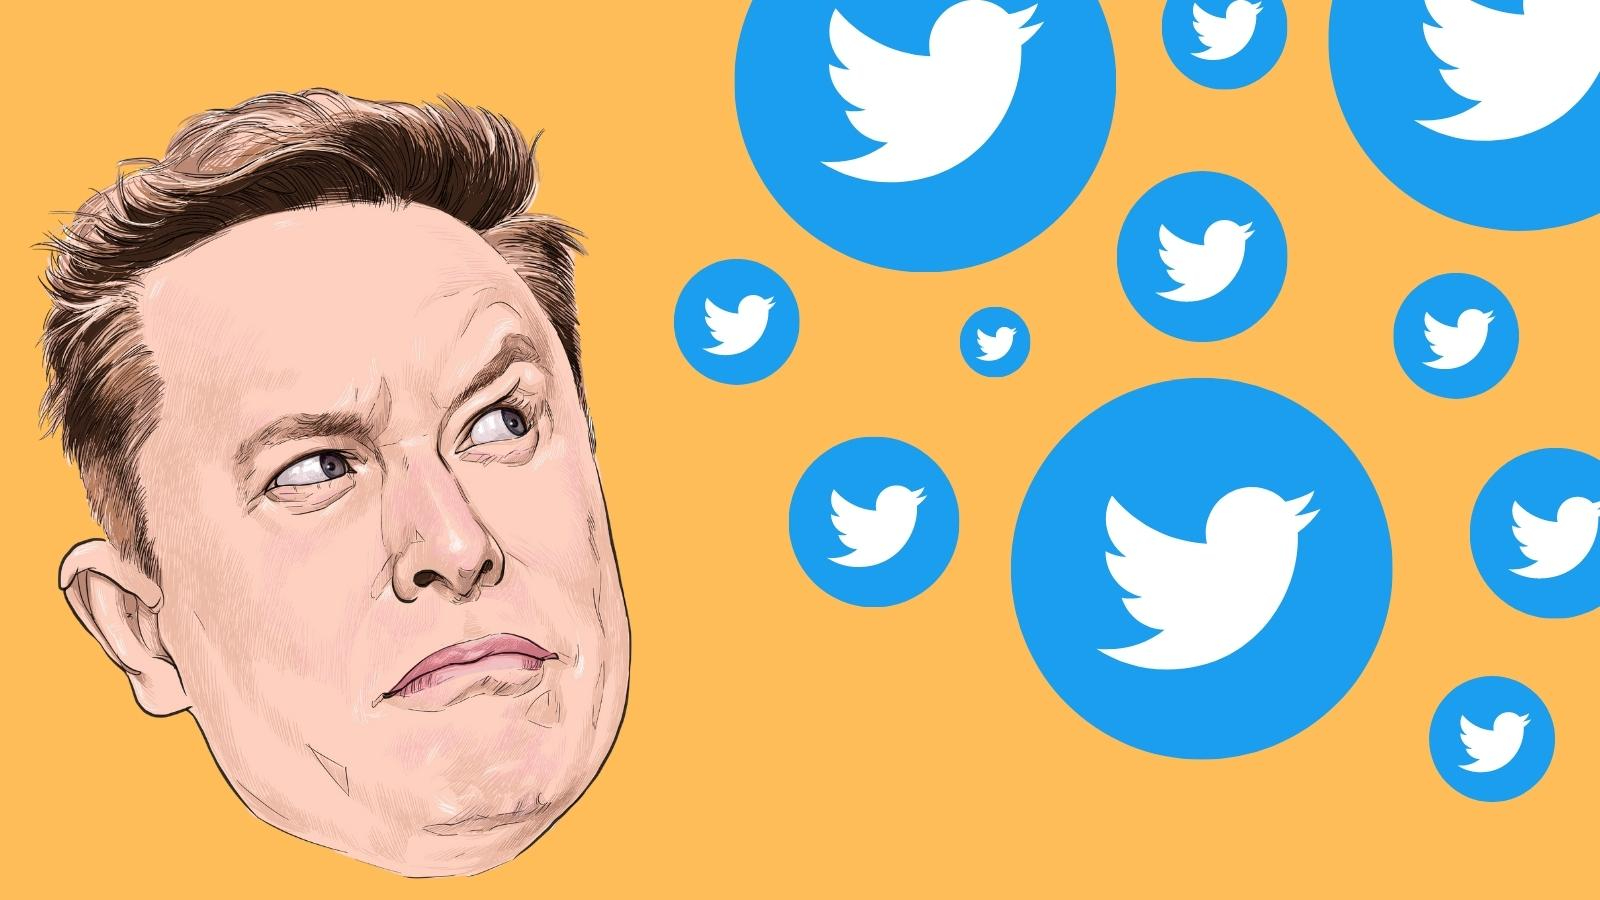 Живой блог: хаос в Твиттере — Илон Маск делает важные политические шаги